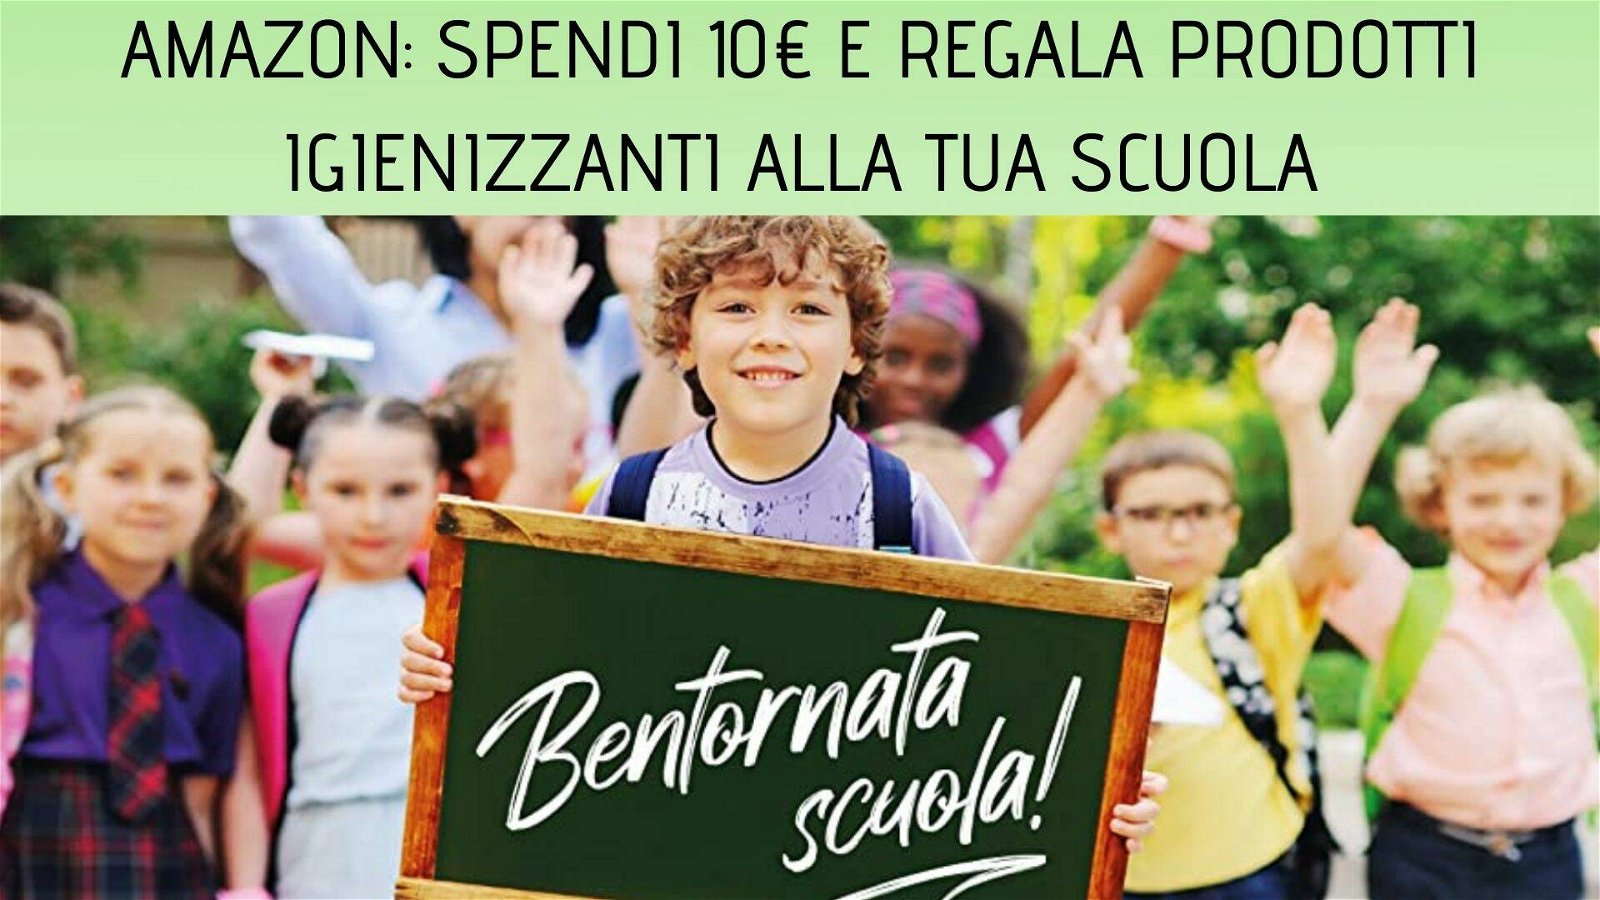 Immagine di Amazon: acquista 10€ di prodotti e regali una fornitura di prodotti igienizzanti alla tua scuola